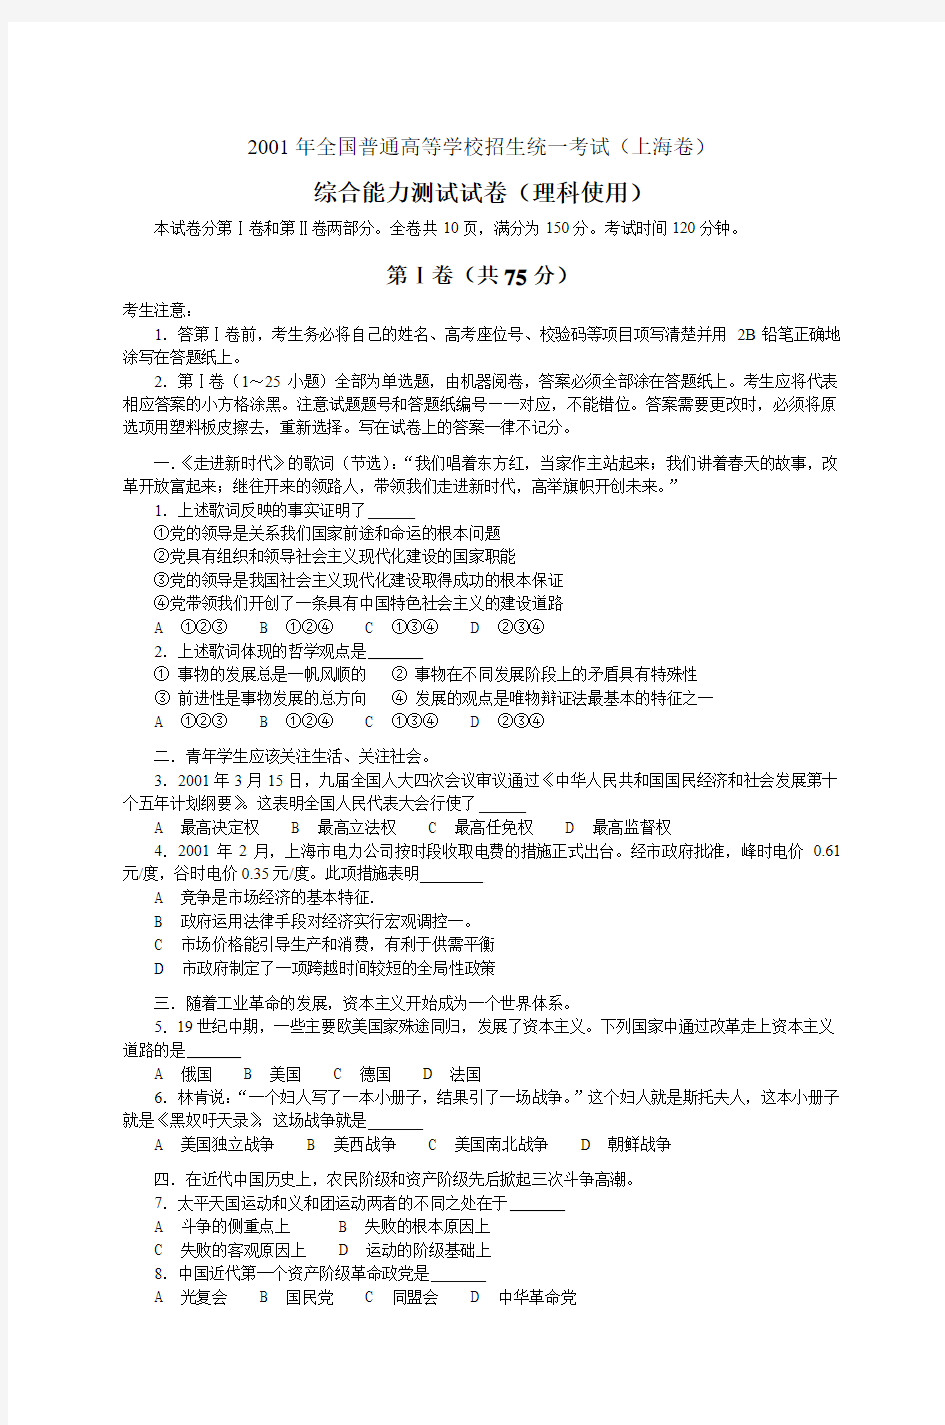 2001年全国普通高等学校招生统一考试(上海卷)综合能力测试试卷(